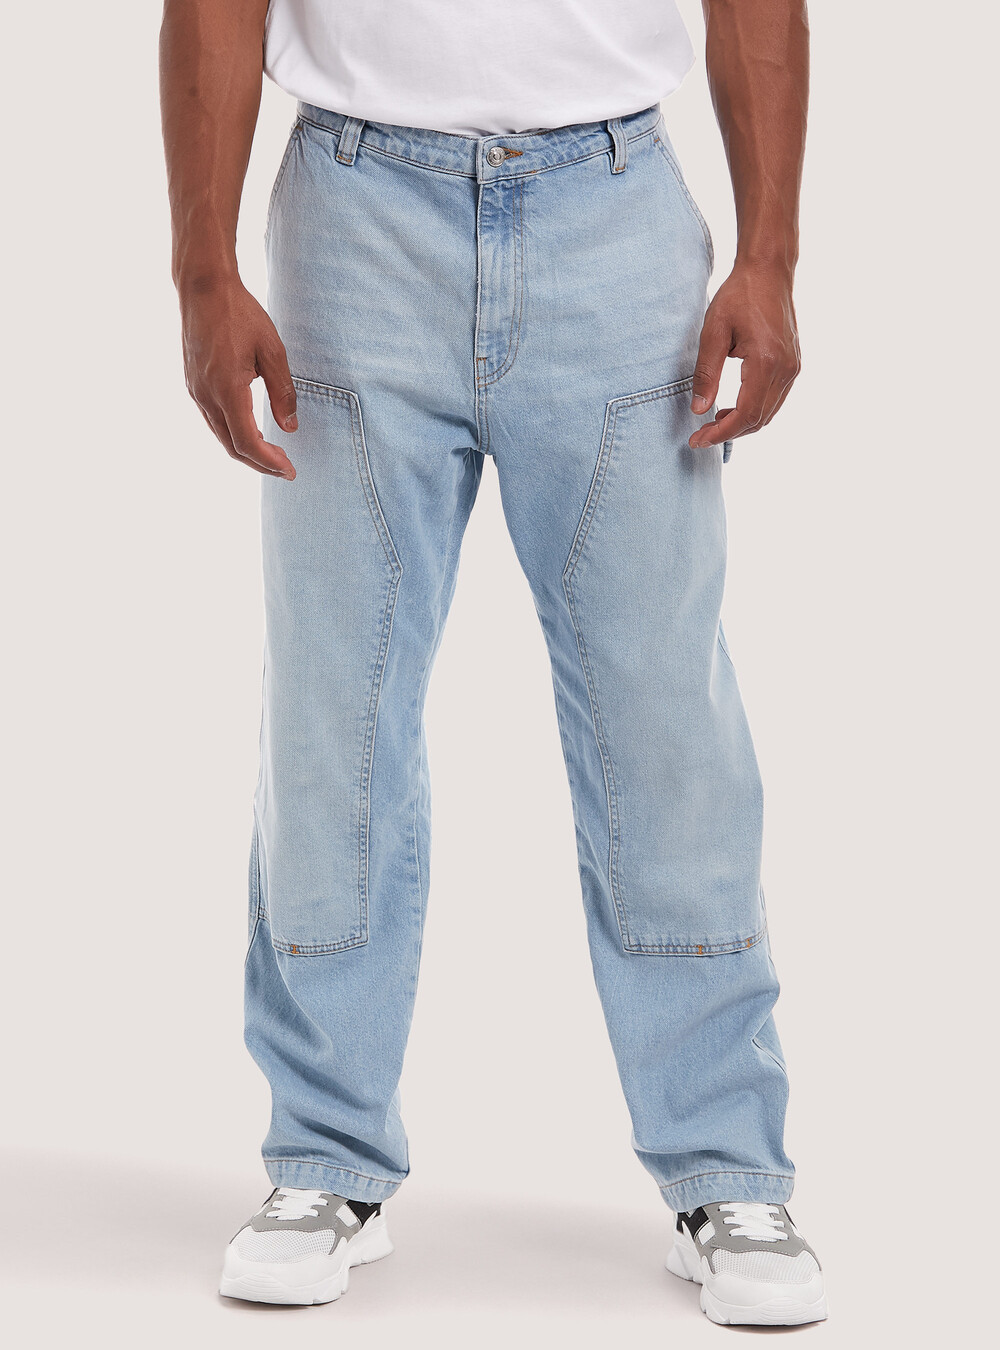 Cotton carpenter jeans